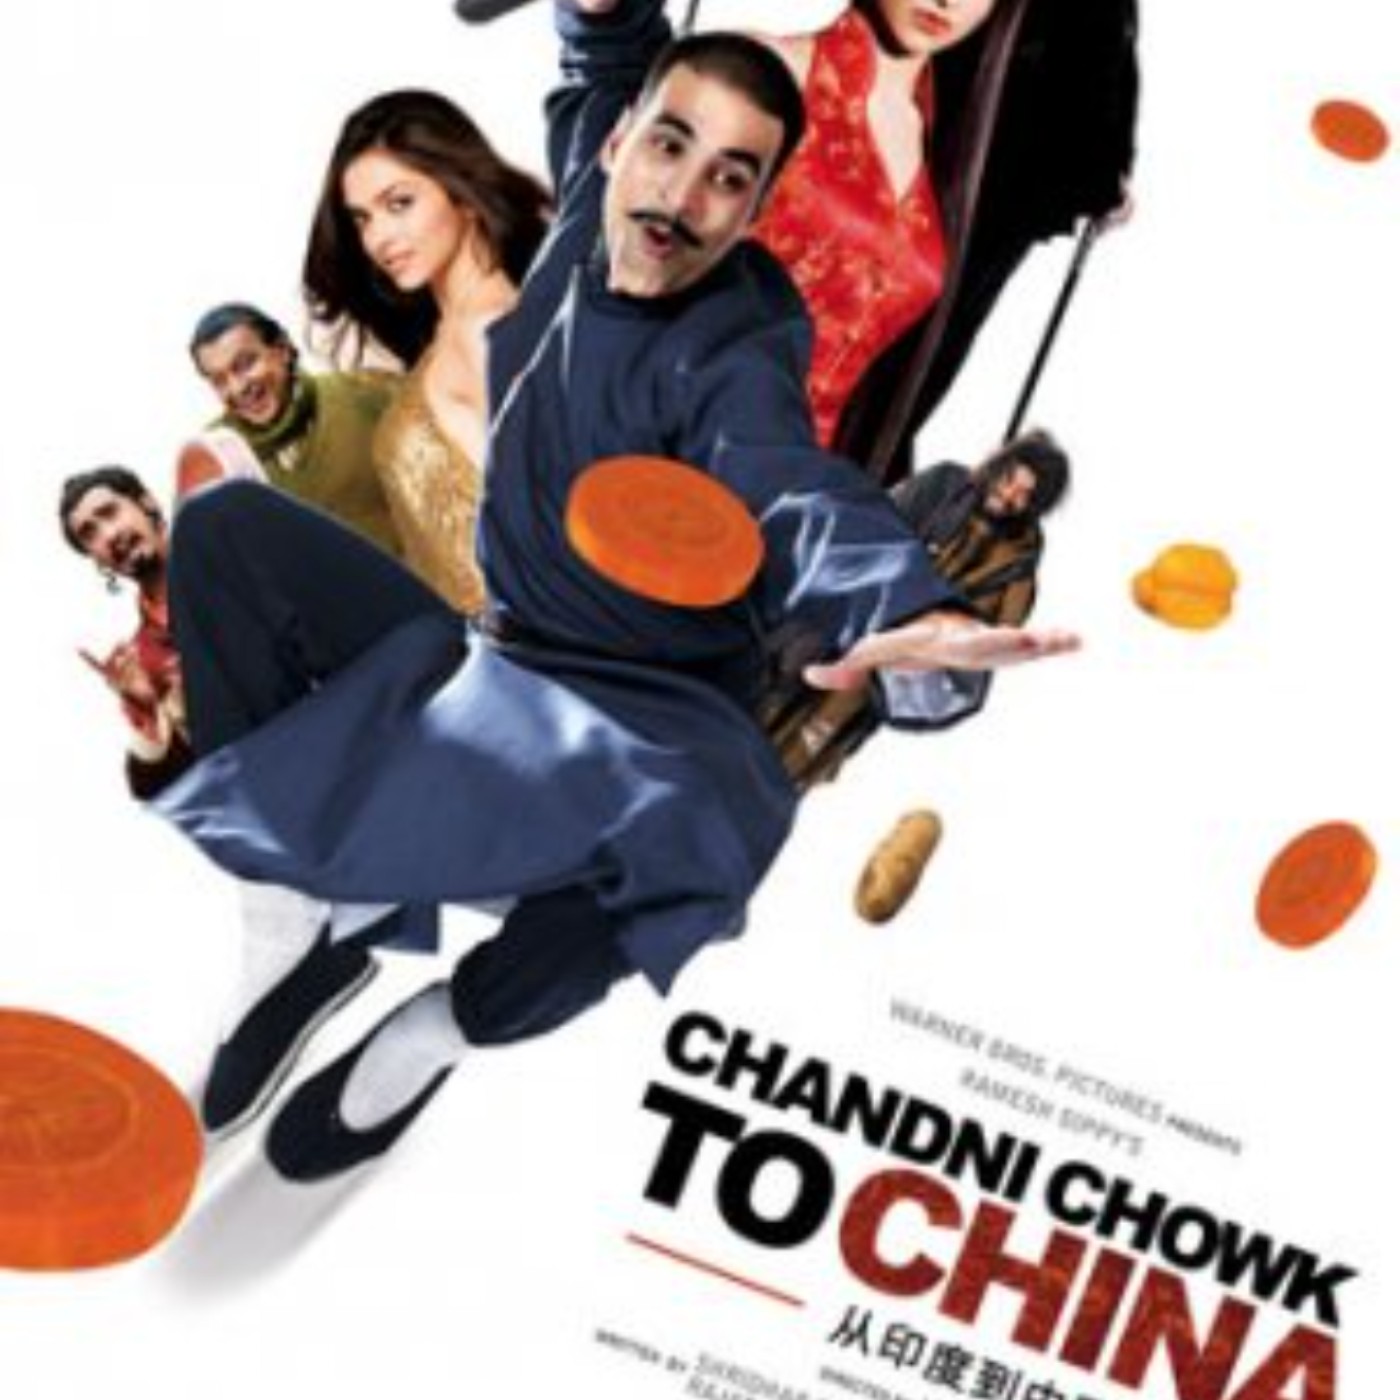 Chandni chowk to china torrent